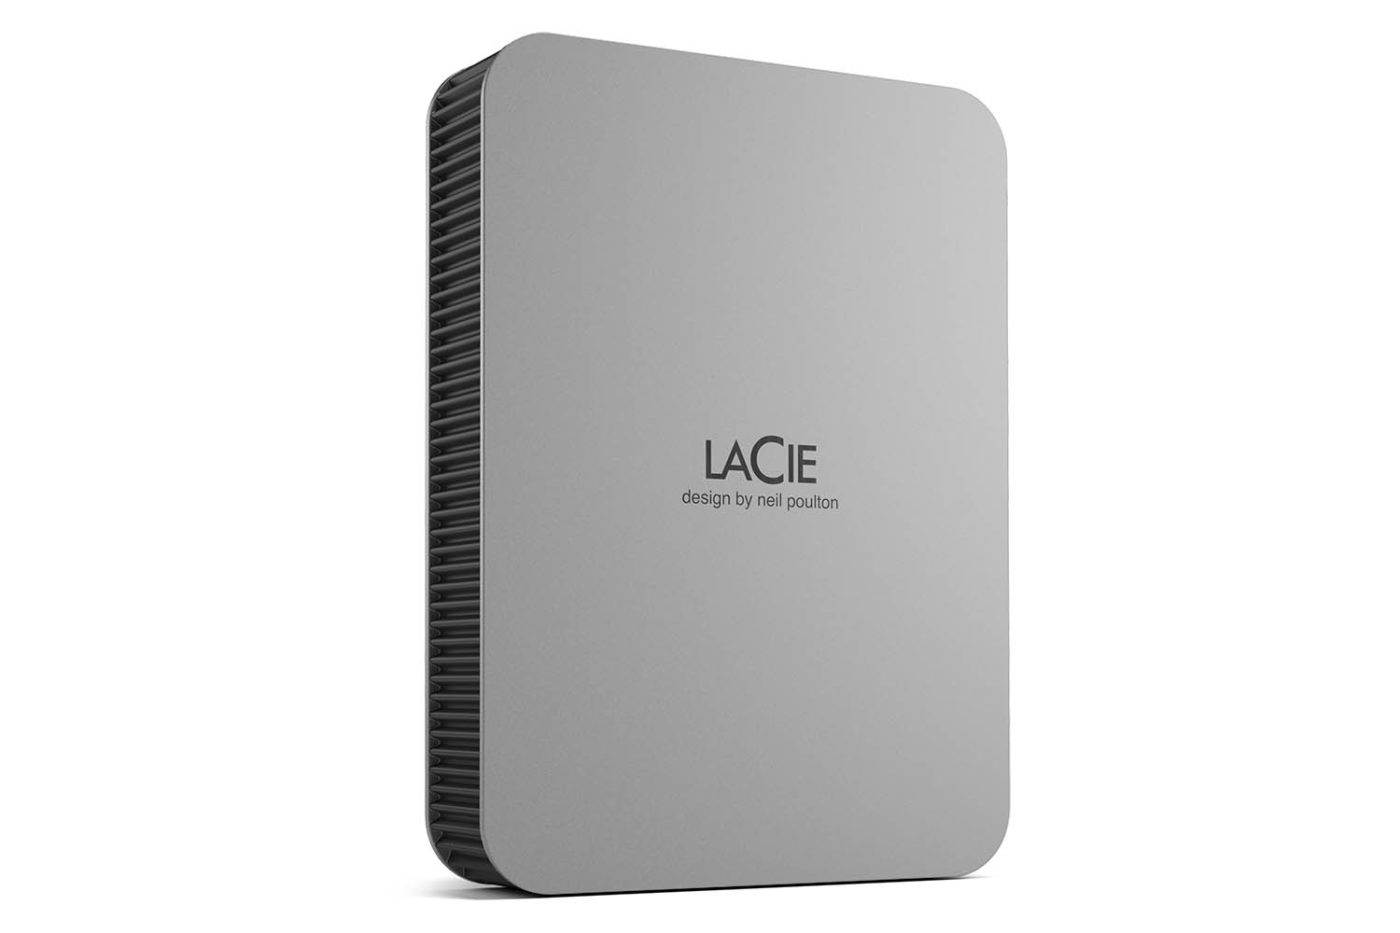 LaCie Disque dur externe portatif Mobile Drive - Gris - 1To - LE MAC URBAIN